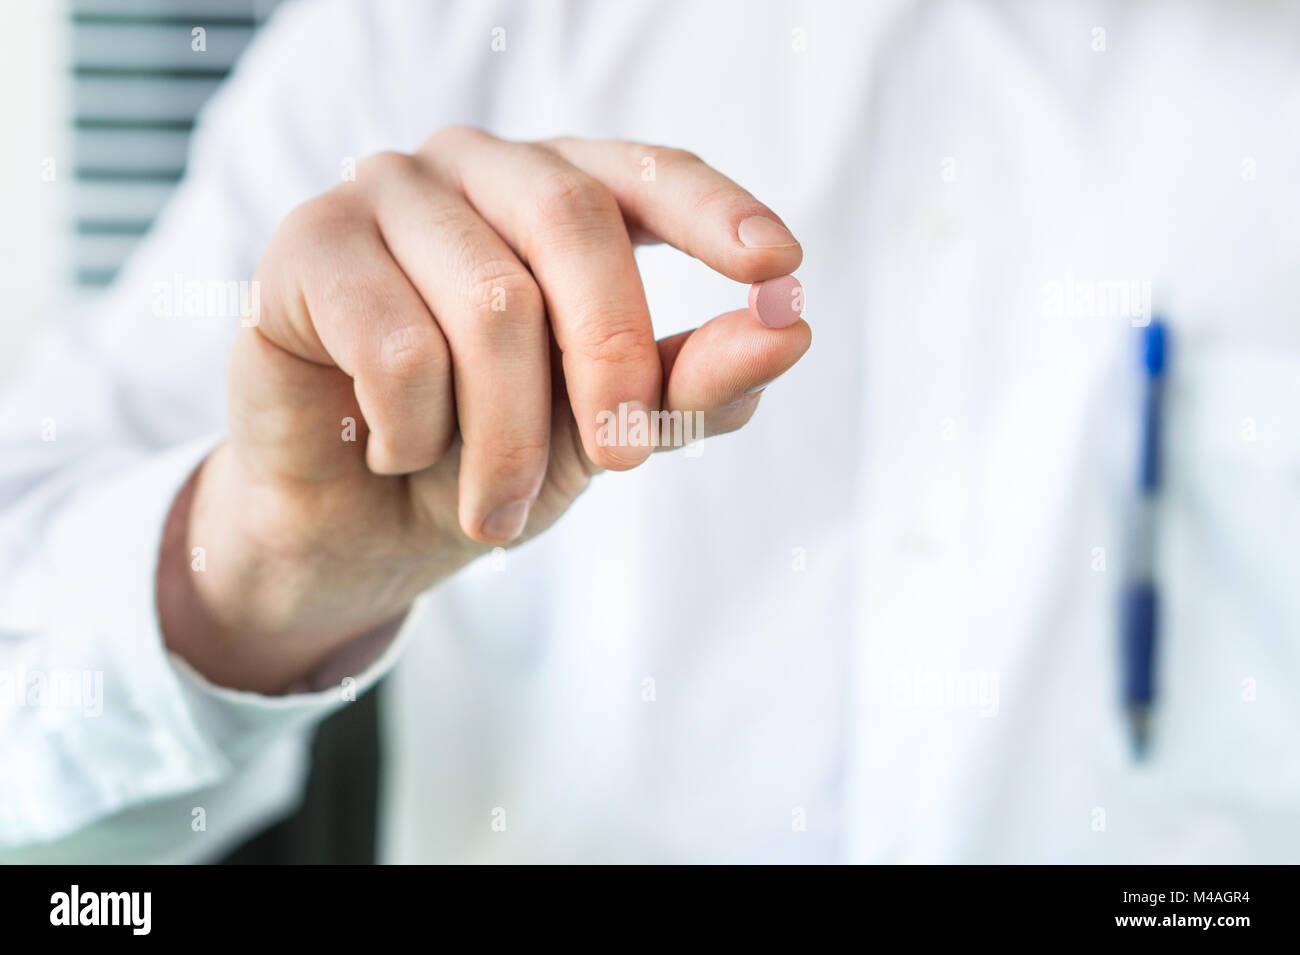 Arzt oder Apotheker Holding eine Pille zwischen den Fingern. Arzt und Experte im weißen Mantel mit Medizin. Stockfoto